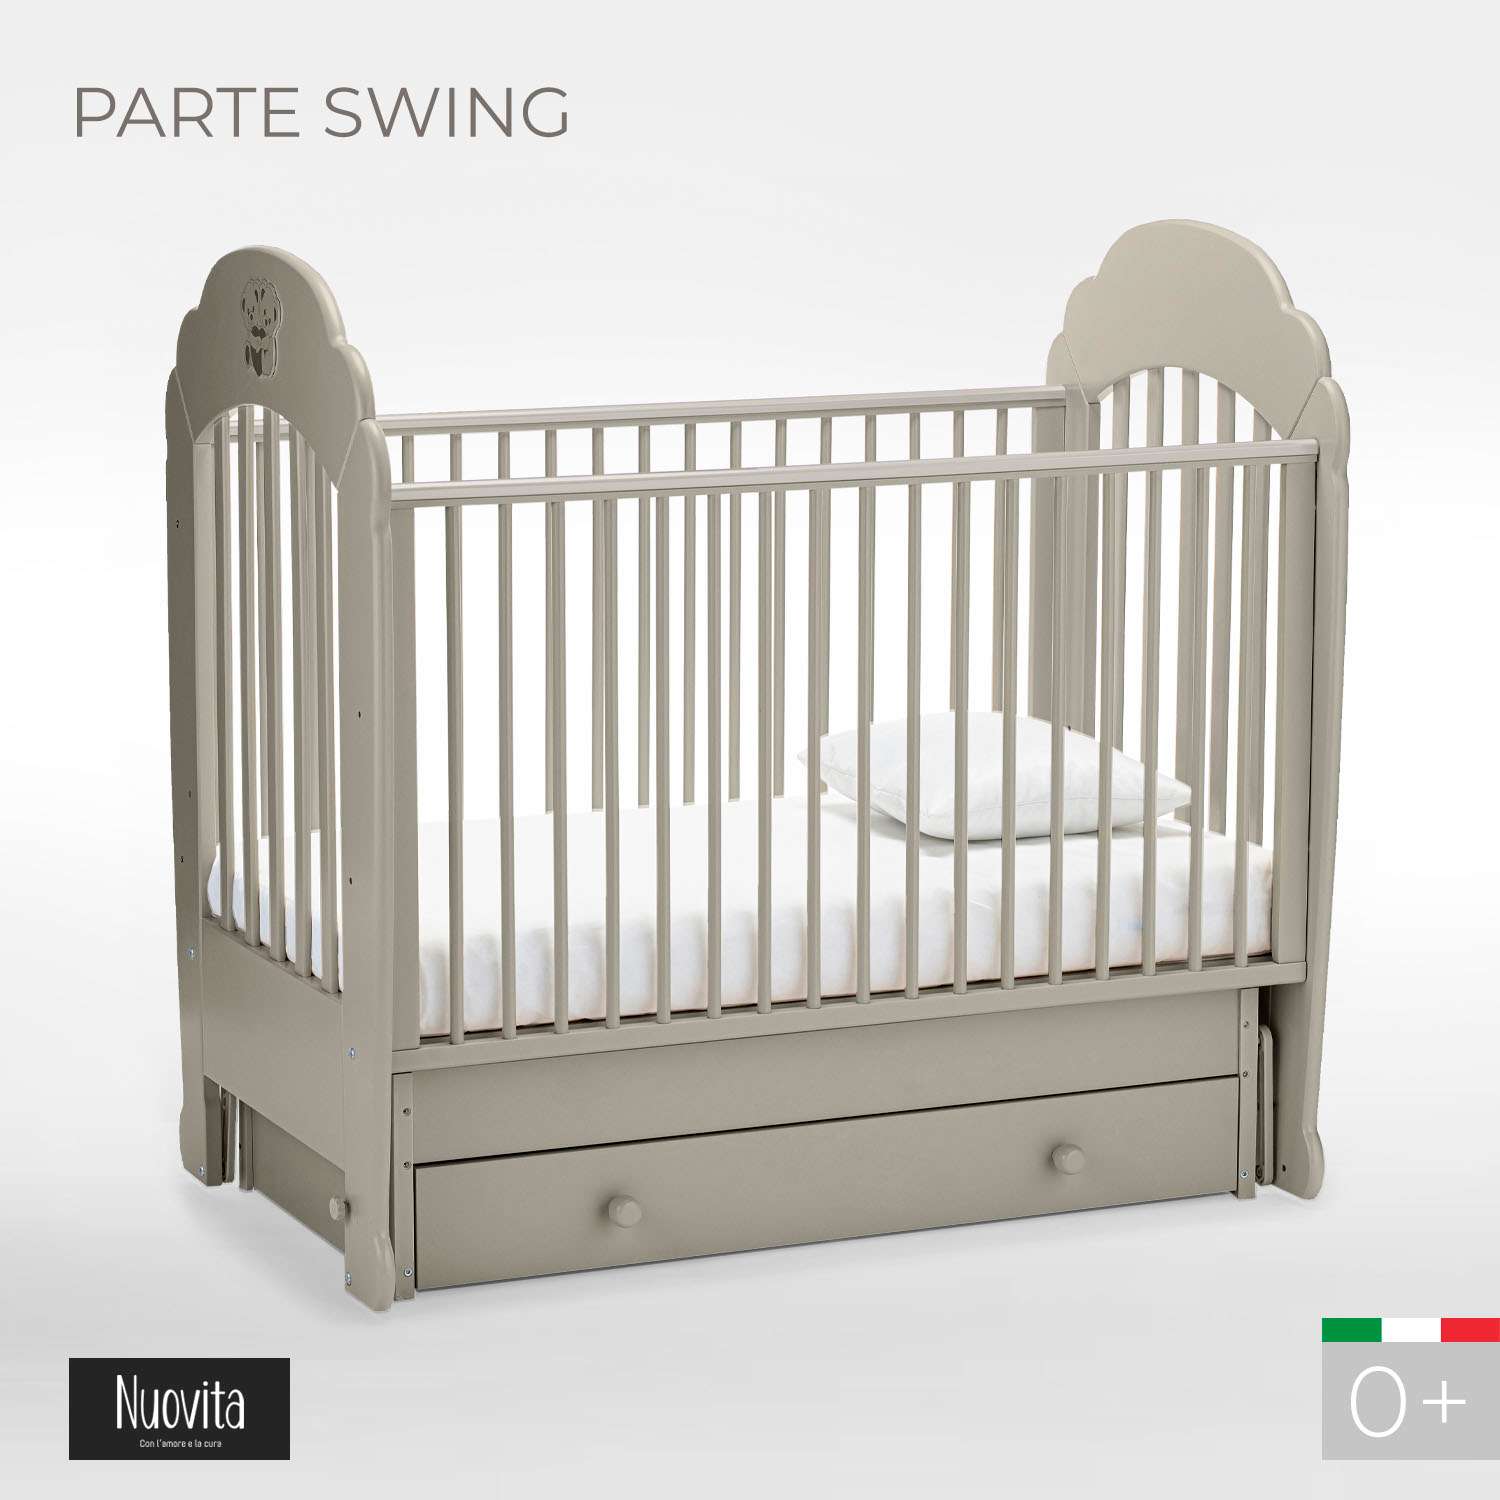 Детская кроватка Nuovita Parte Swing прямоугольная, поперечный маятник (серый) - фото 2